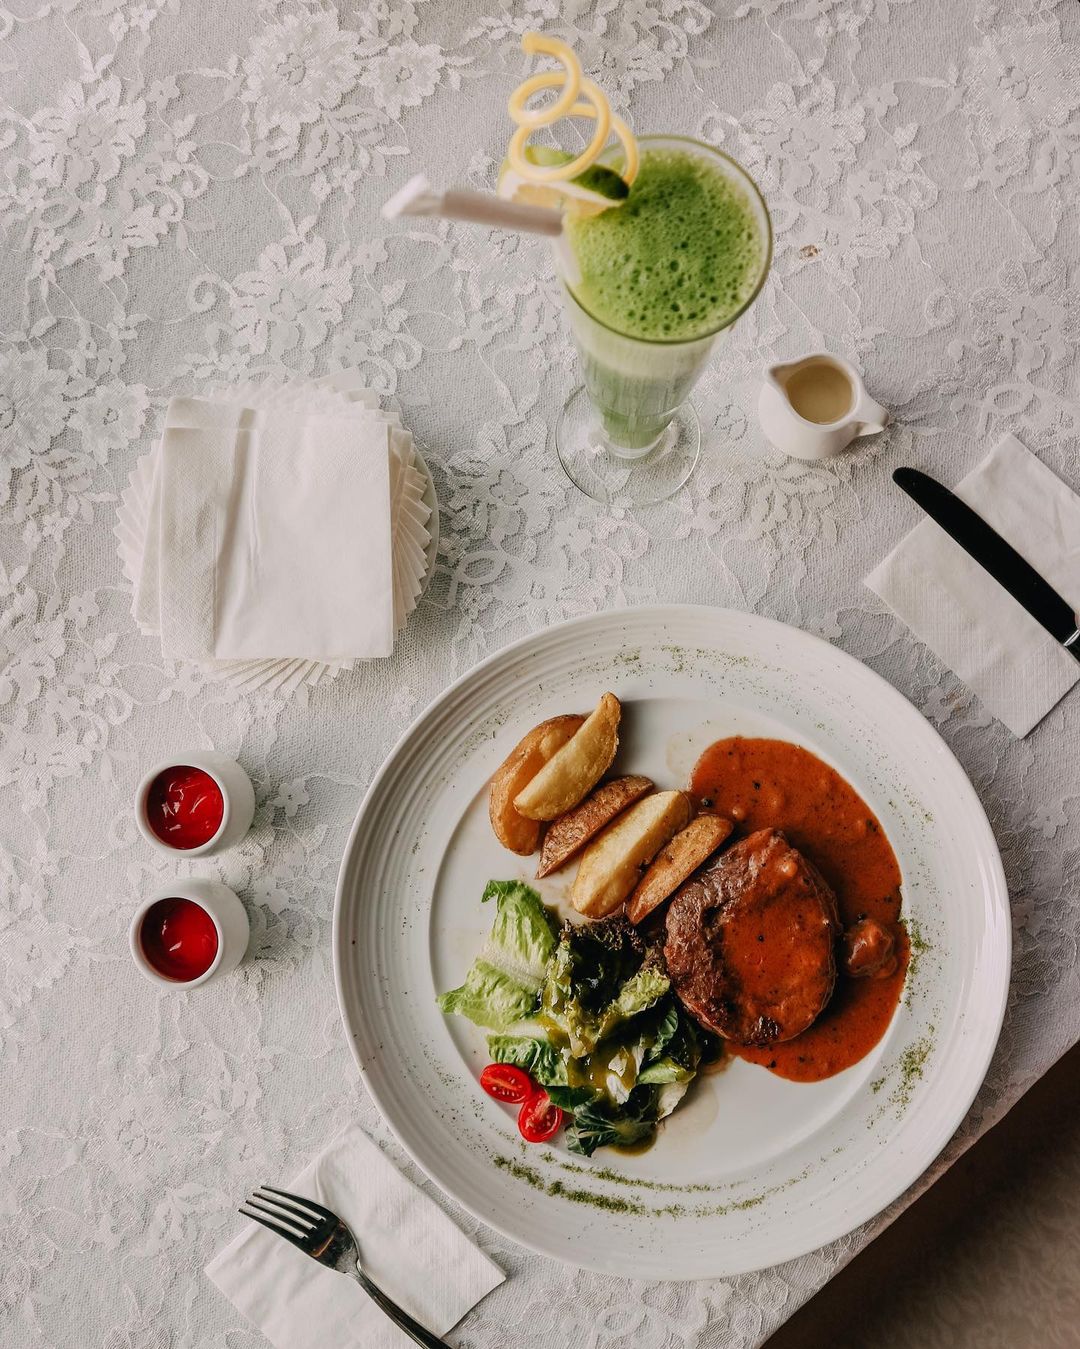 Tempat Makan Enak Di Bandung The Peak Resort Dining Image From @galaxy_antariksaaa